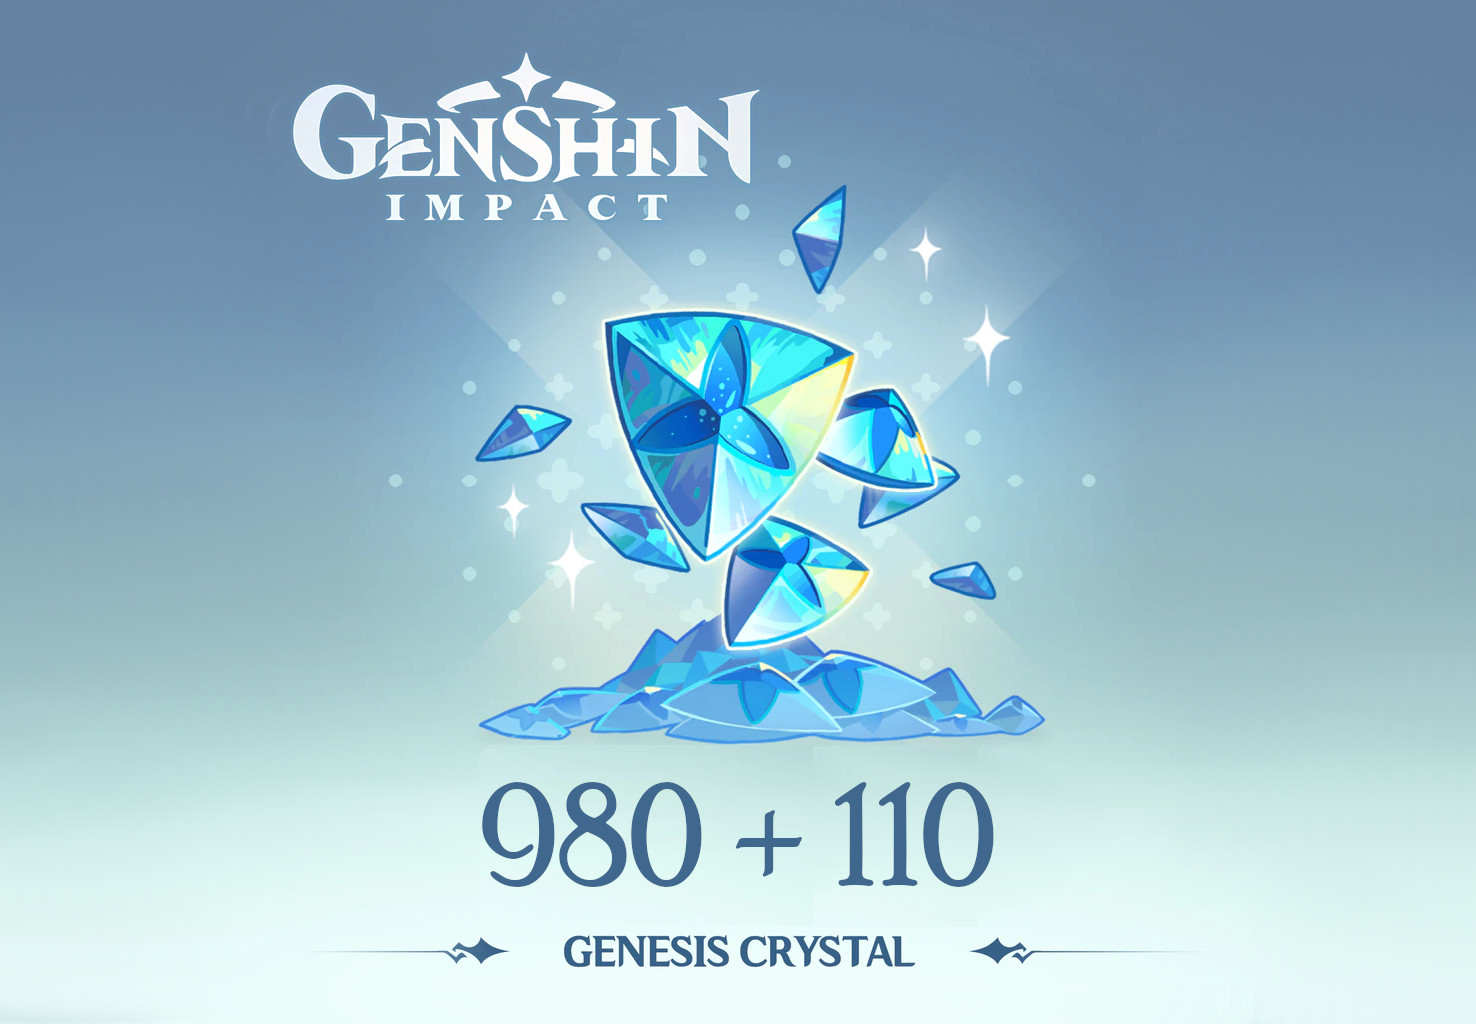 Genshin Impact - 980 + 110 Genesis Crystals Reidos Voucher, $17.23